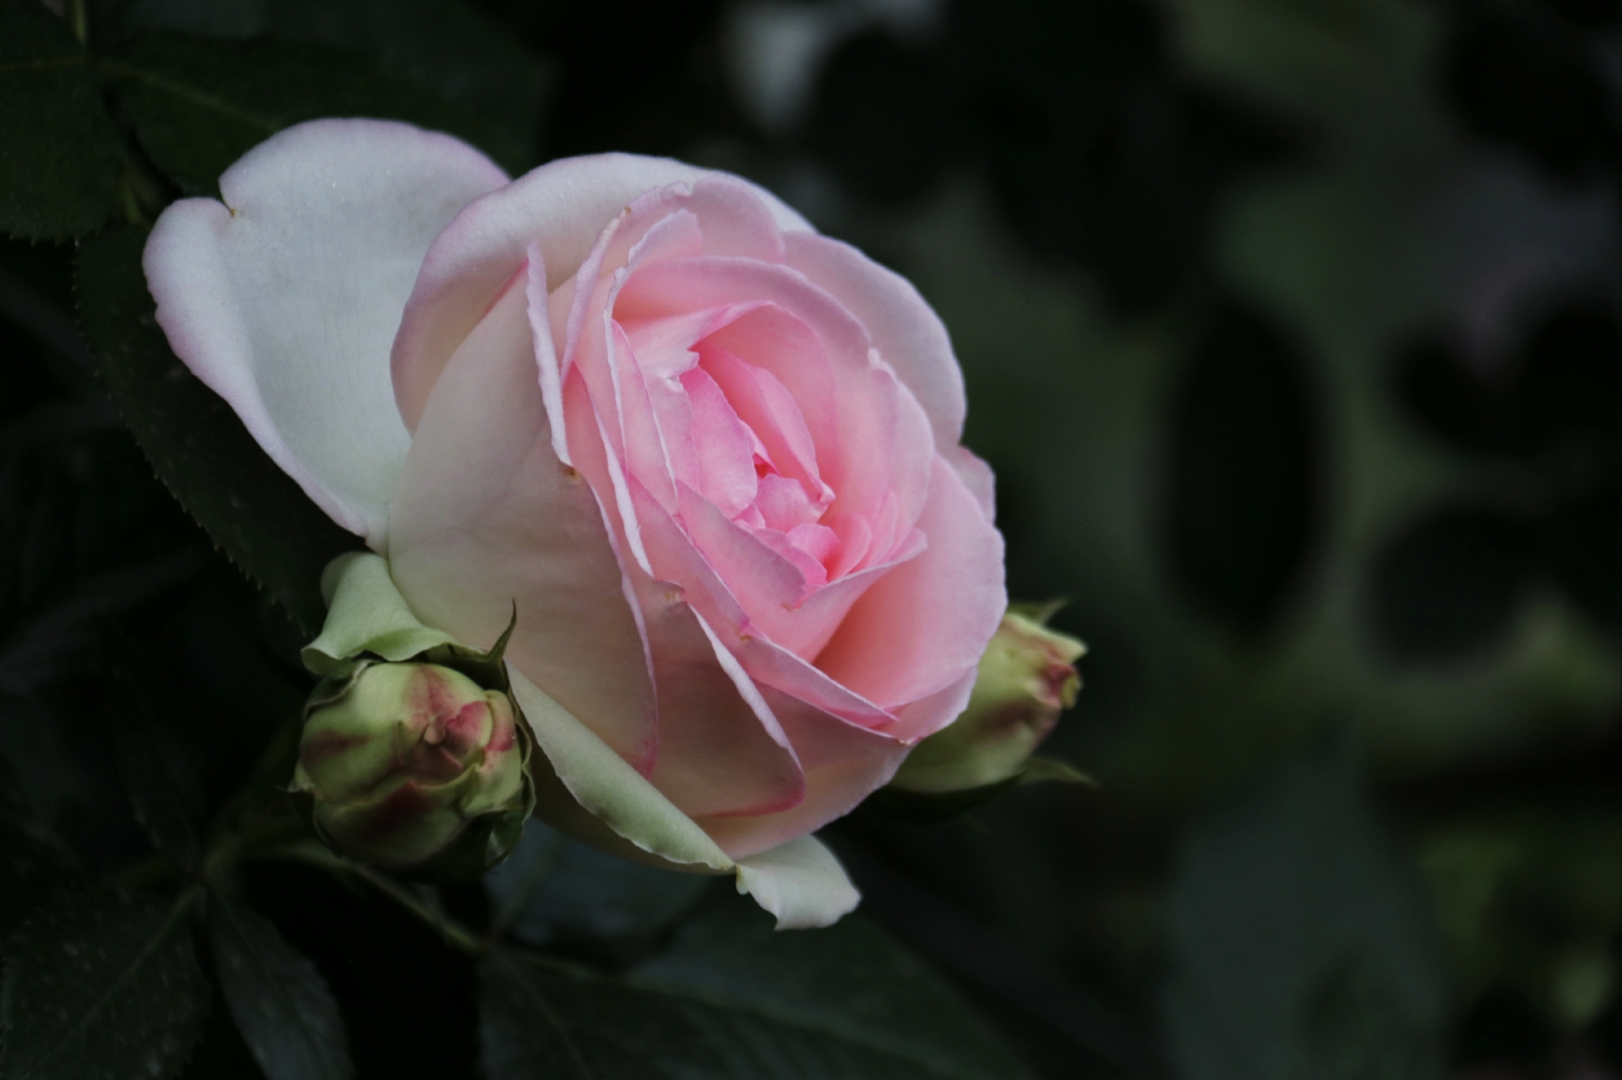 一种蔷薇花,四周白色的叶片镶嵌着粉色的花办,造型美观别致,向一个